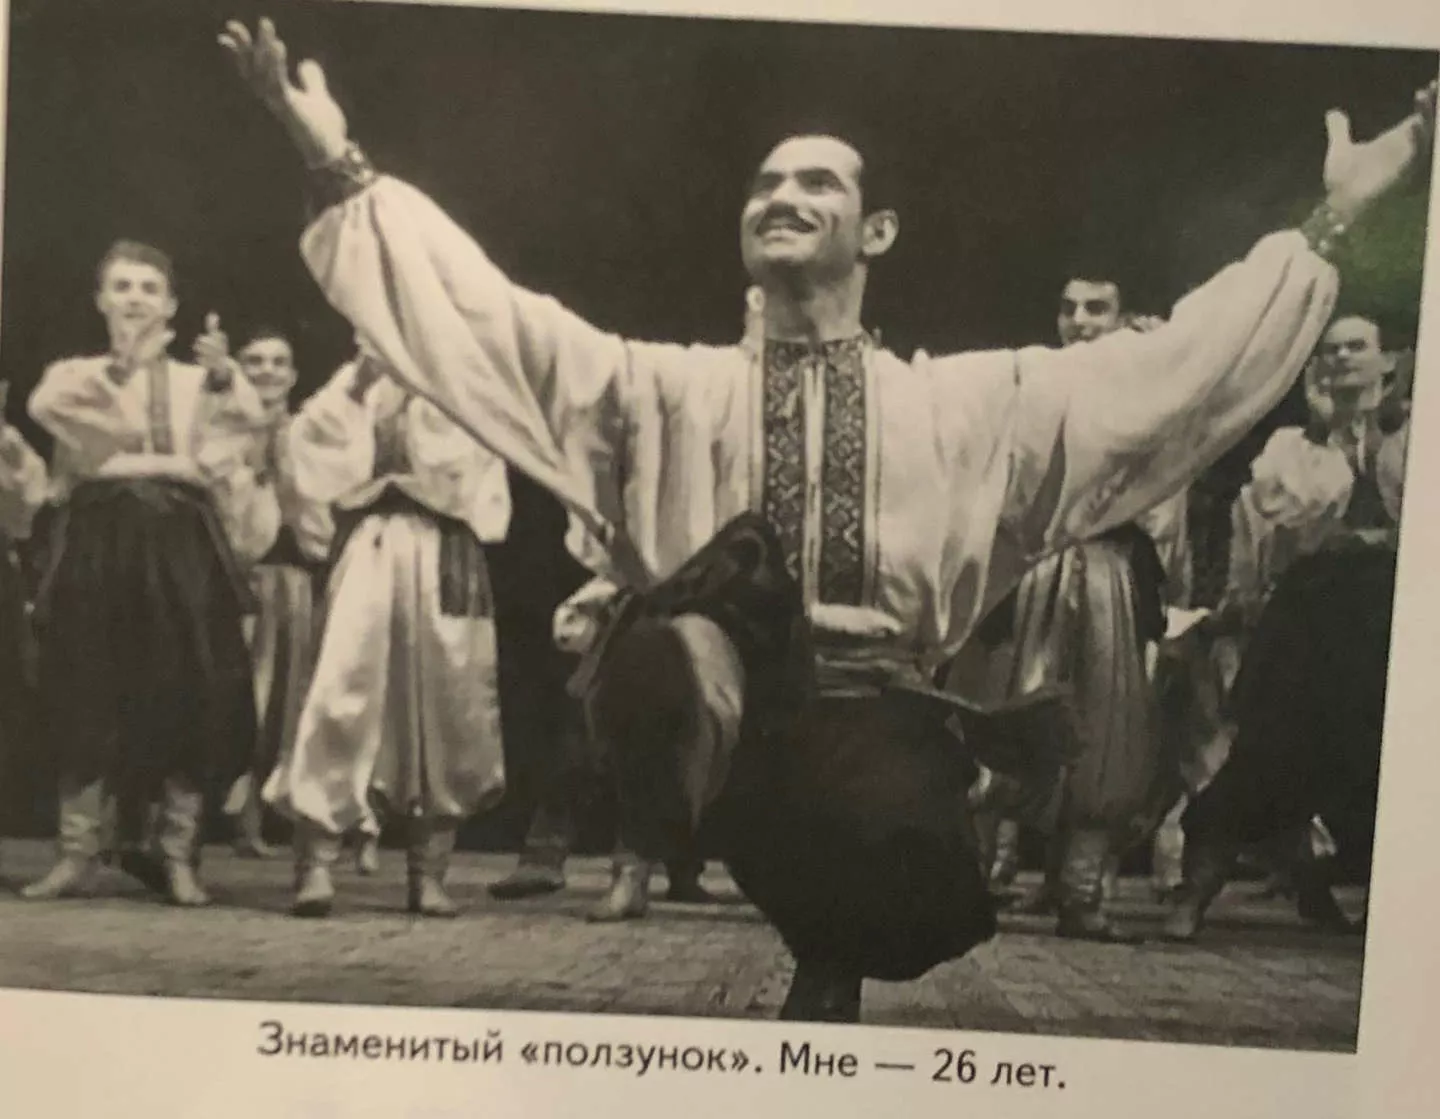 26-летний Григорий Чапкис исполняет "ползунок".
Фото из его книги "Танец и любовь: секреты долголетия"